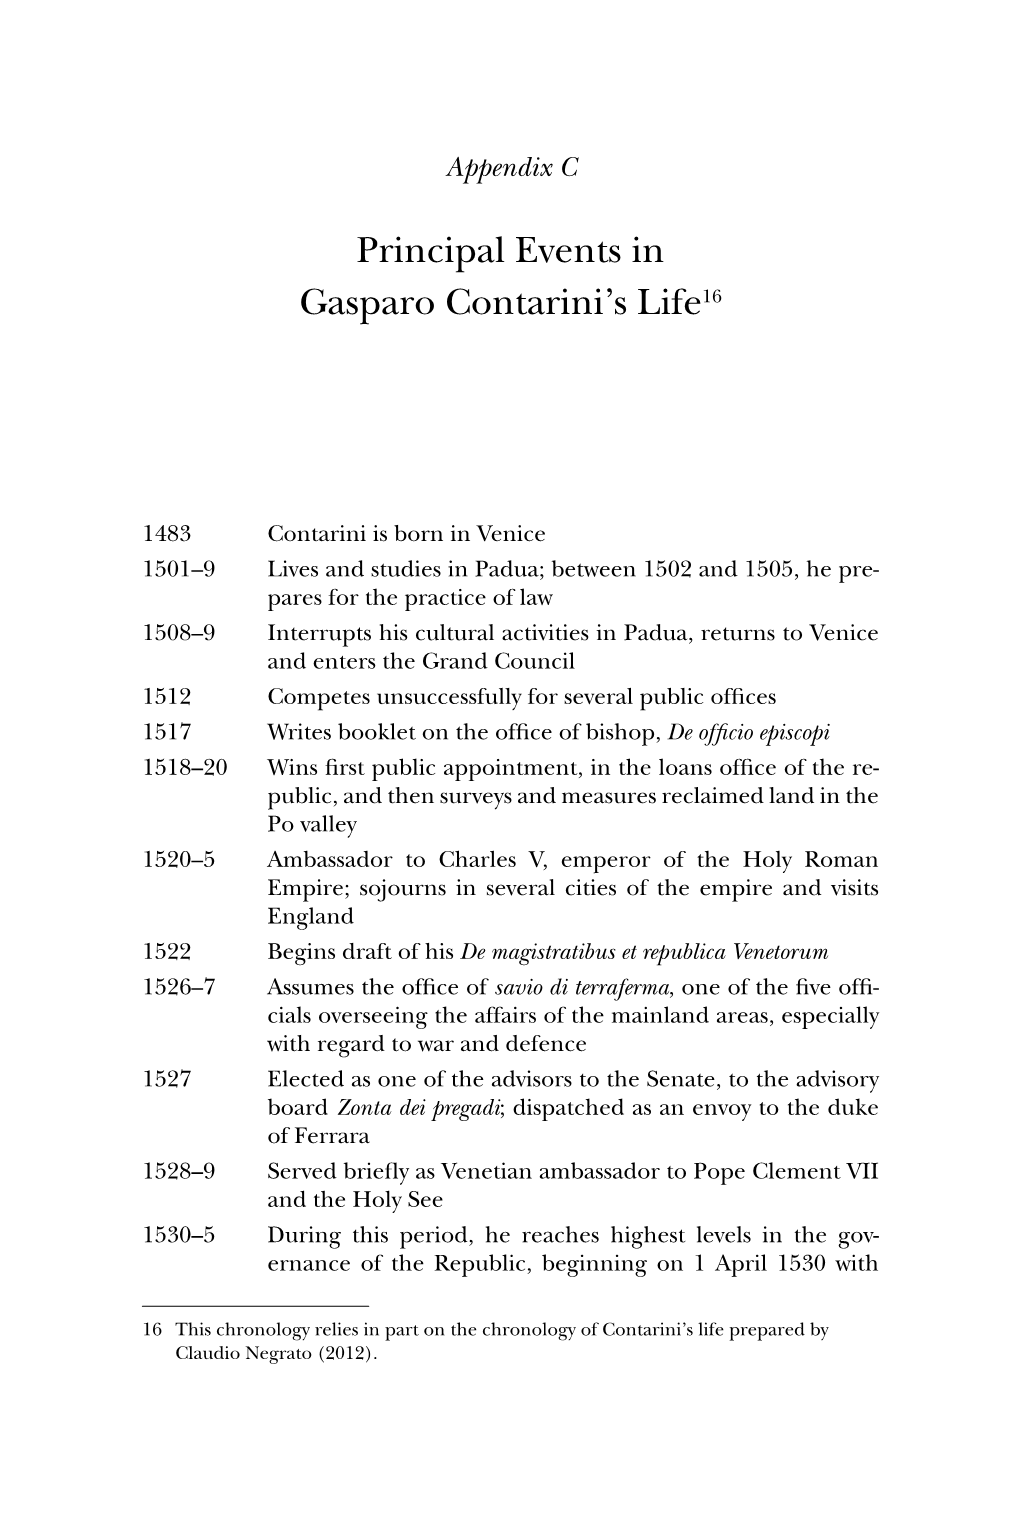 Events in Gasparo Contarini's Life16